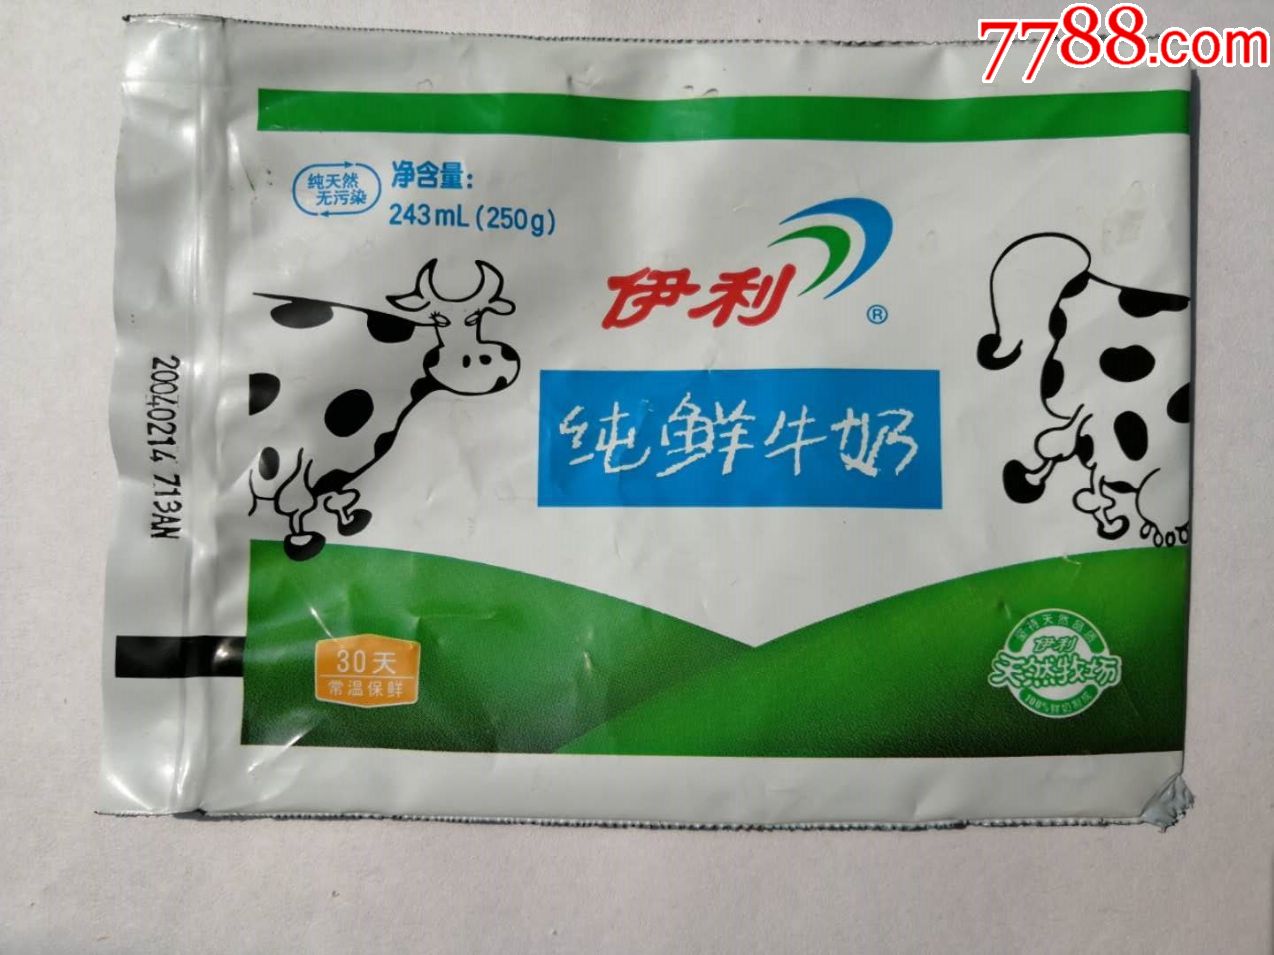 (伊利)纯鲜牛奶袋,看图-价格:10元-au23089876-其他包装袋/纸-加价